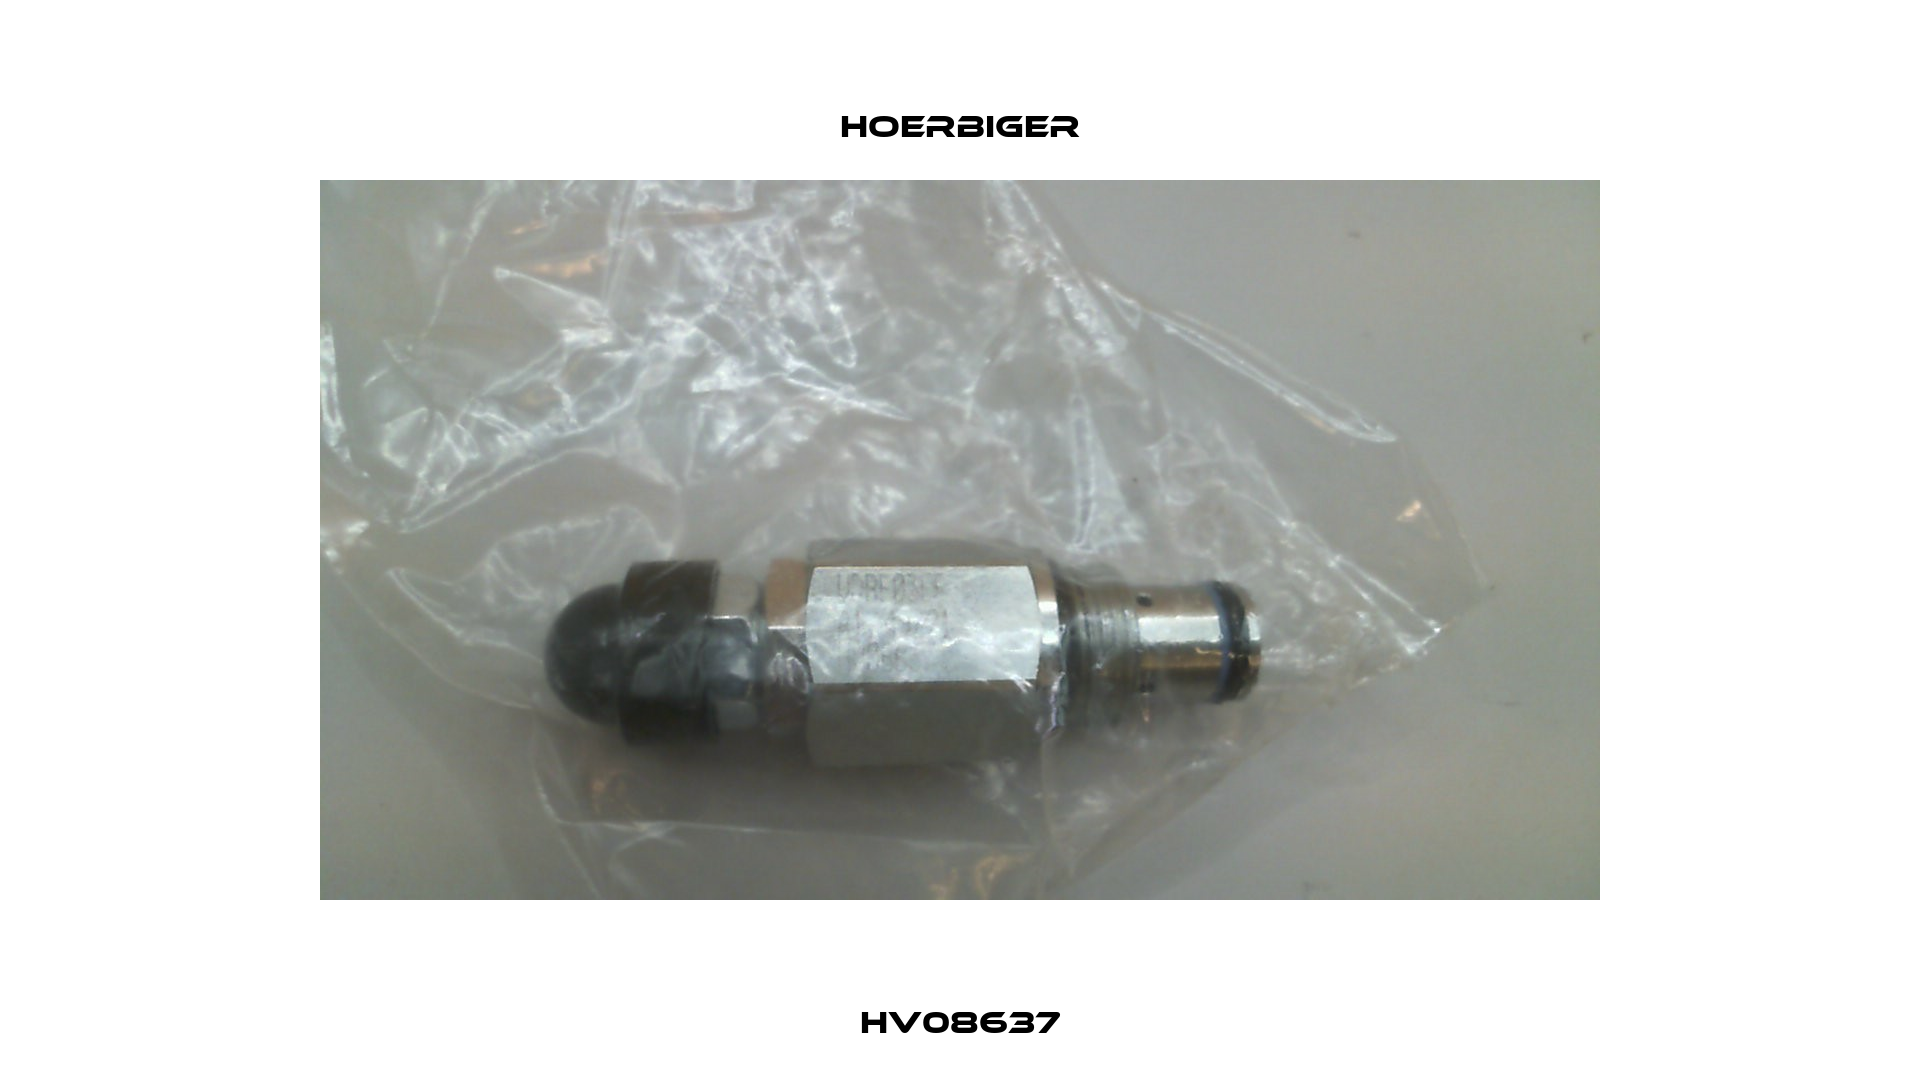 HV08637 Hoerbiger